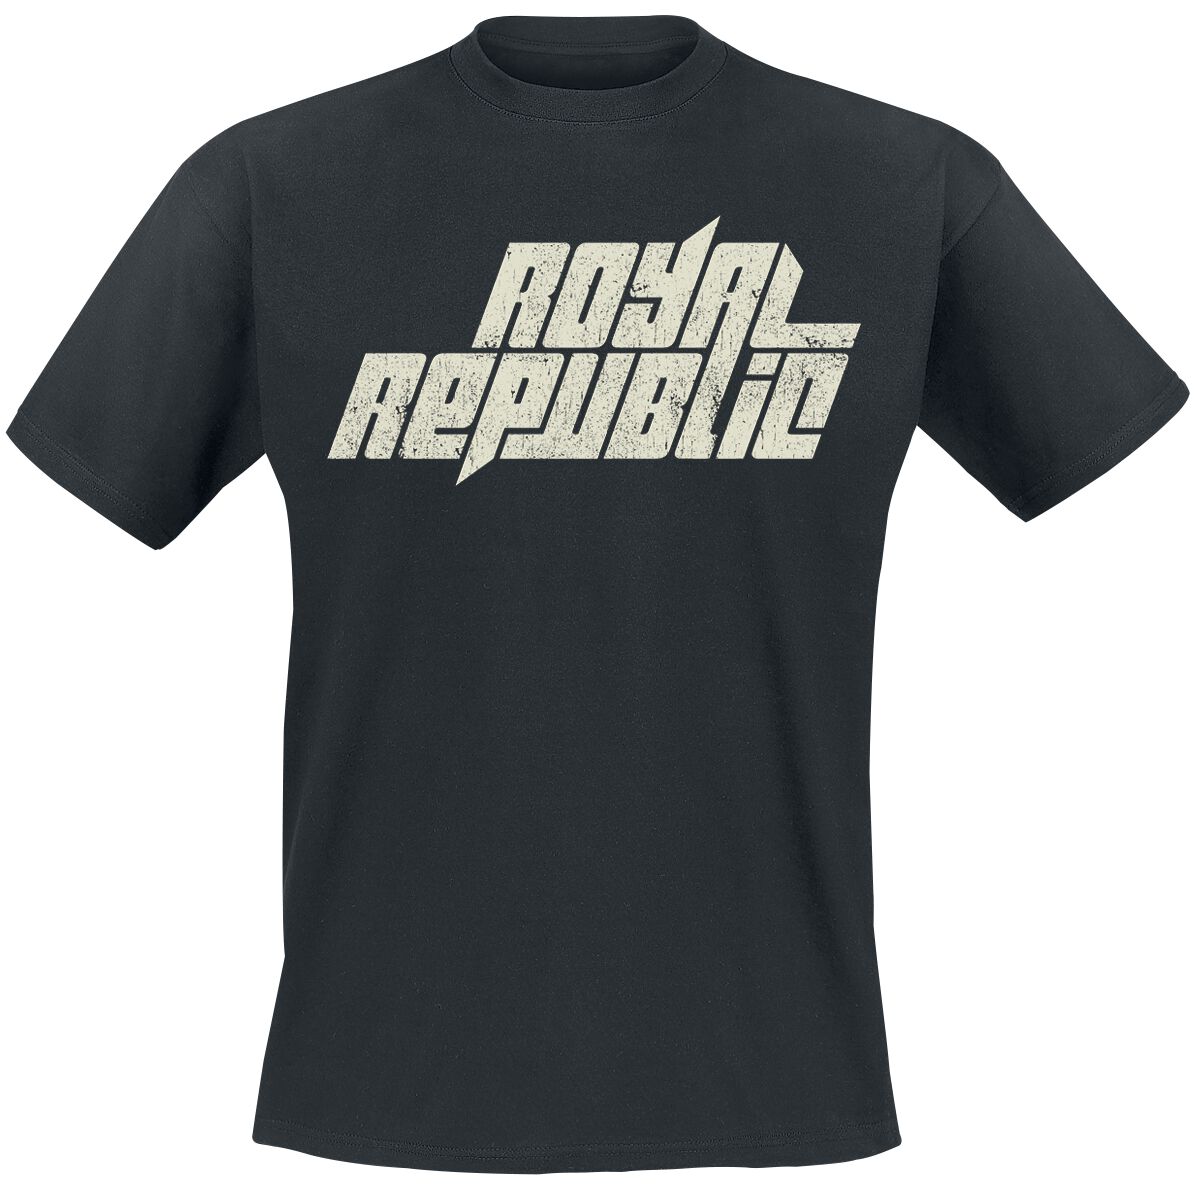 Royal Republic T-Shirt - Vintage Logo - S bis 5XL - für Männer - Größe L - schwarz  - Lizenziertes Merchandise!